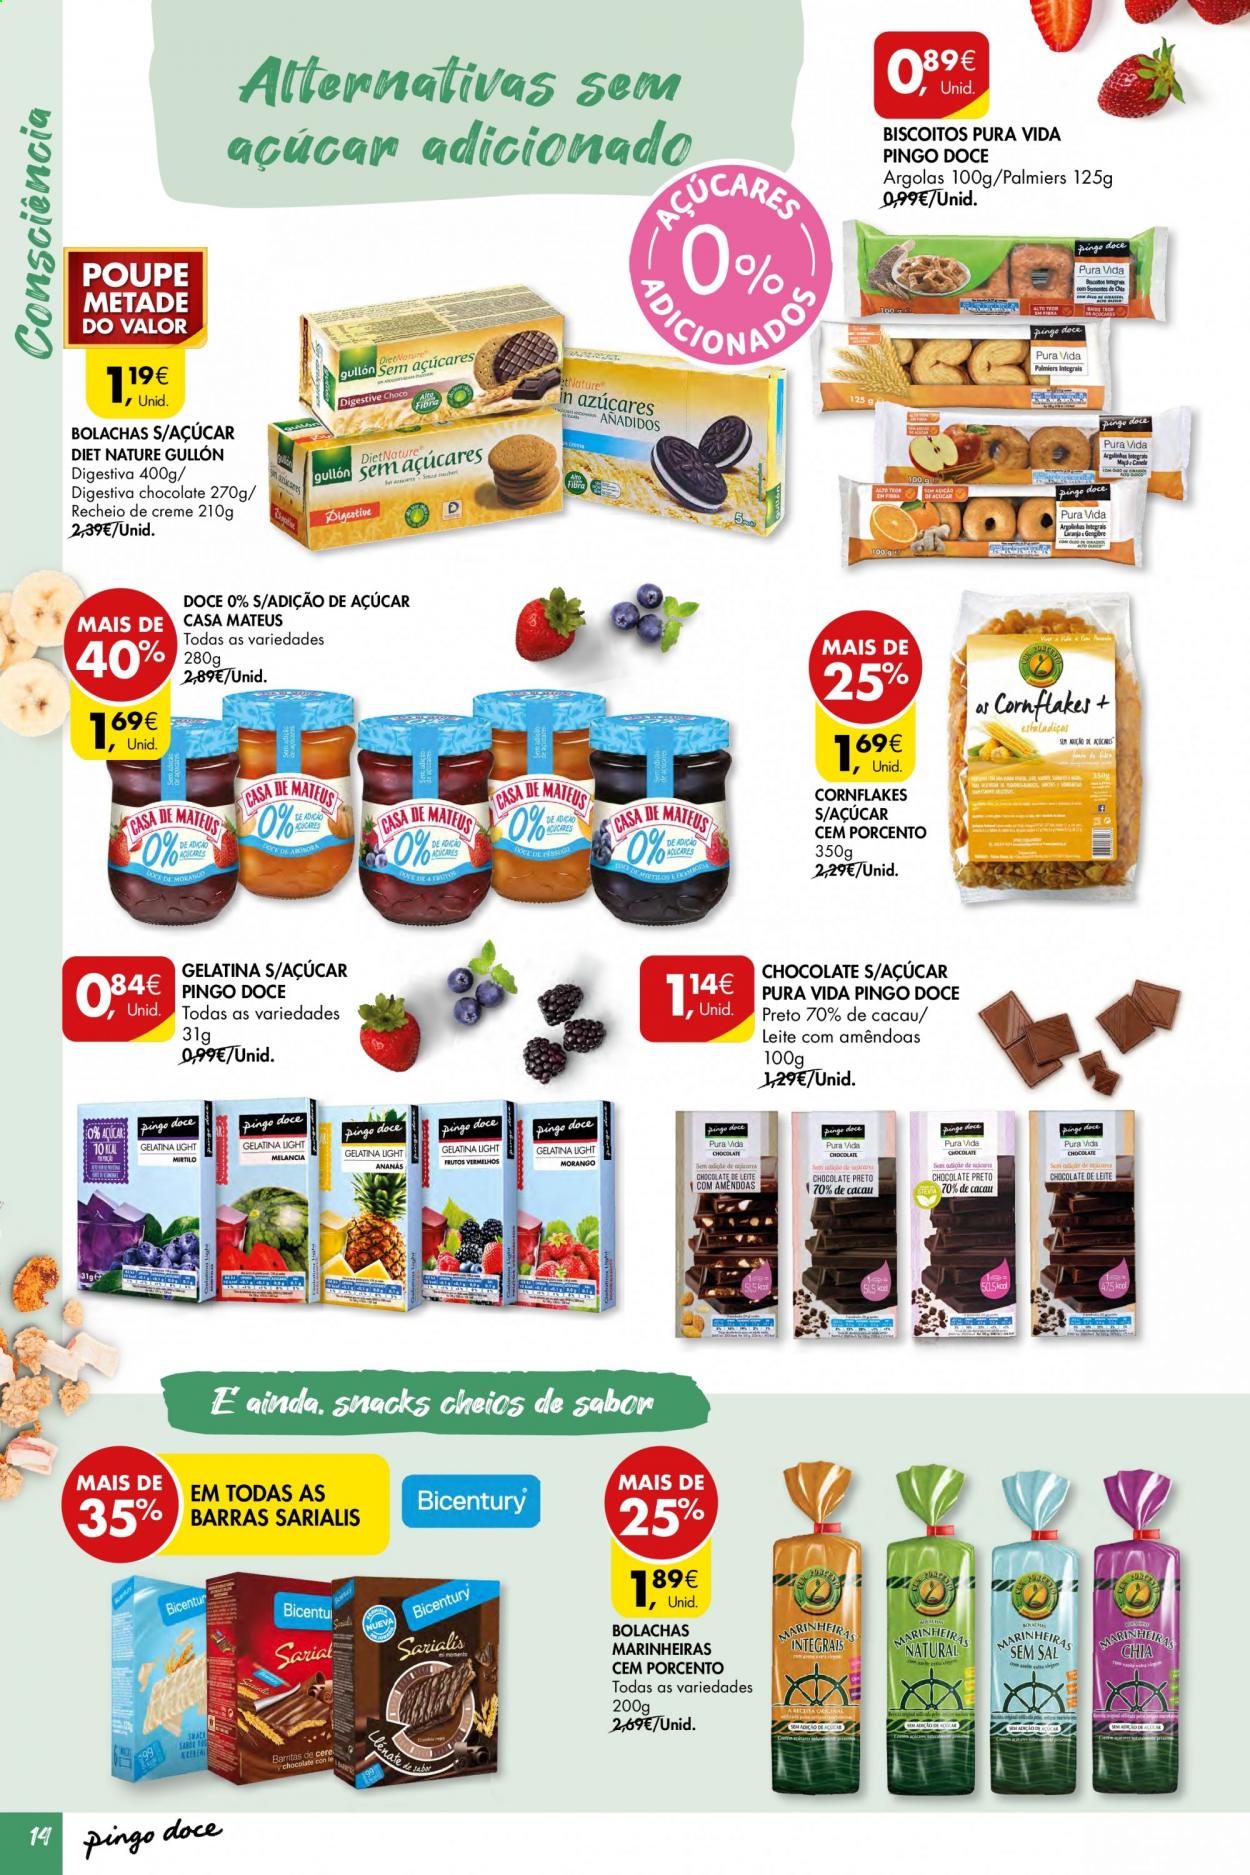 thumbnail - Folheto Pingo Doce - 6.4.2021 - 11.4.2021 - Produtos em promoção - leite, chocolate, biscoito, bolachas, bolachas marinheiras, gelatina. Página 14.